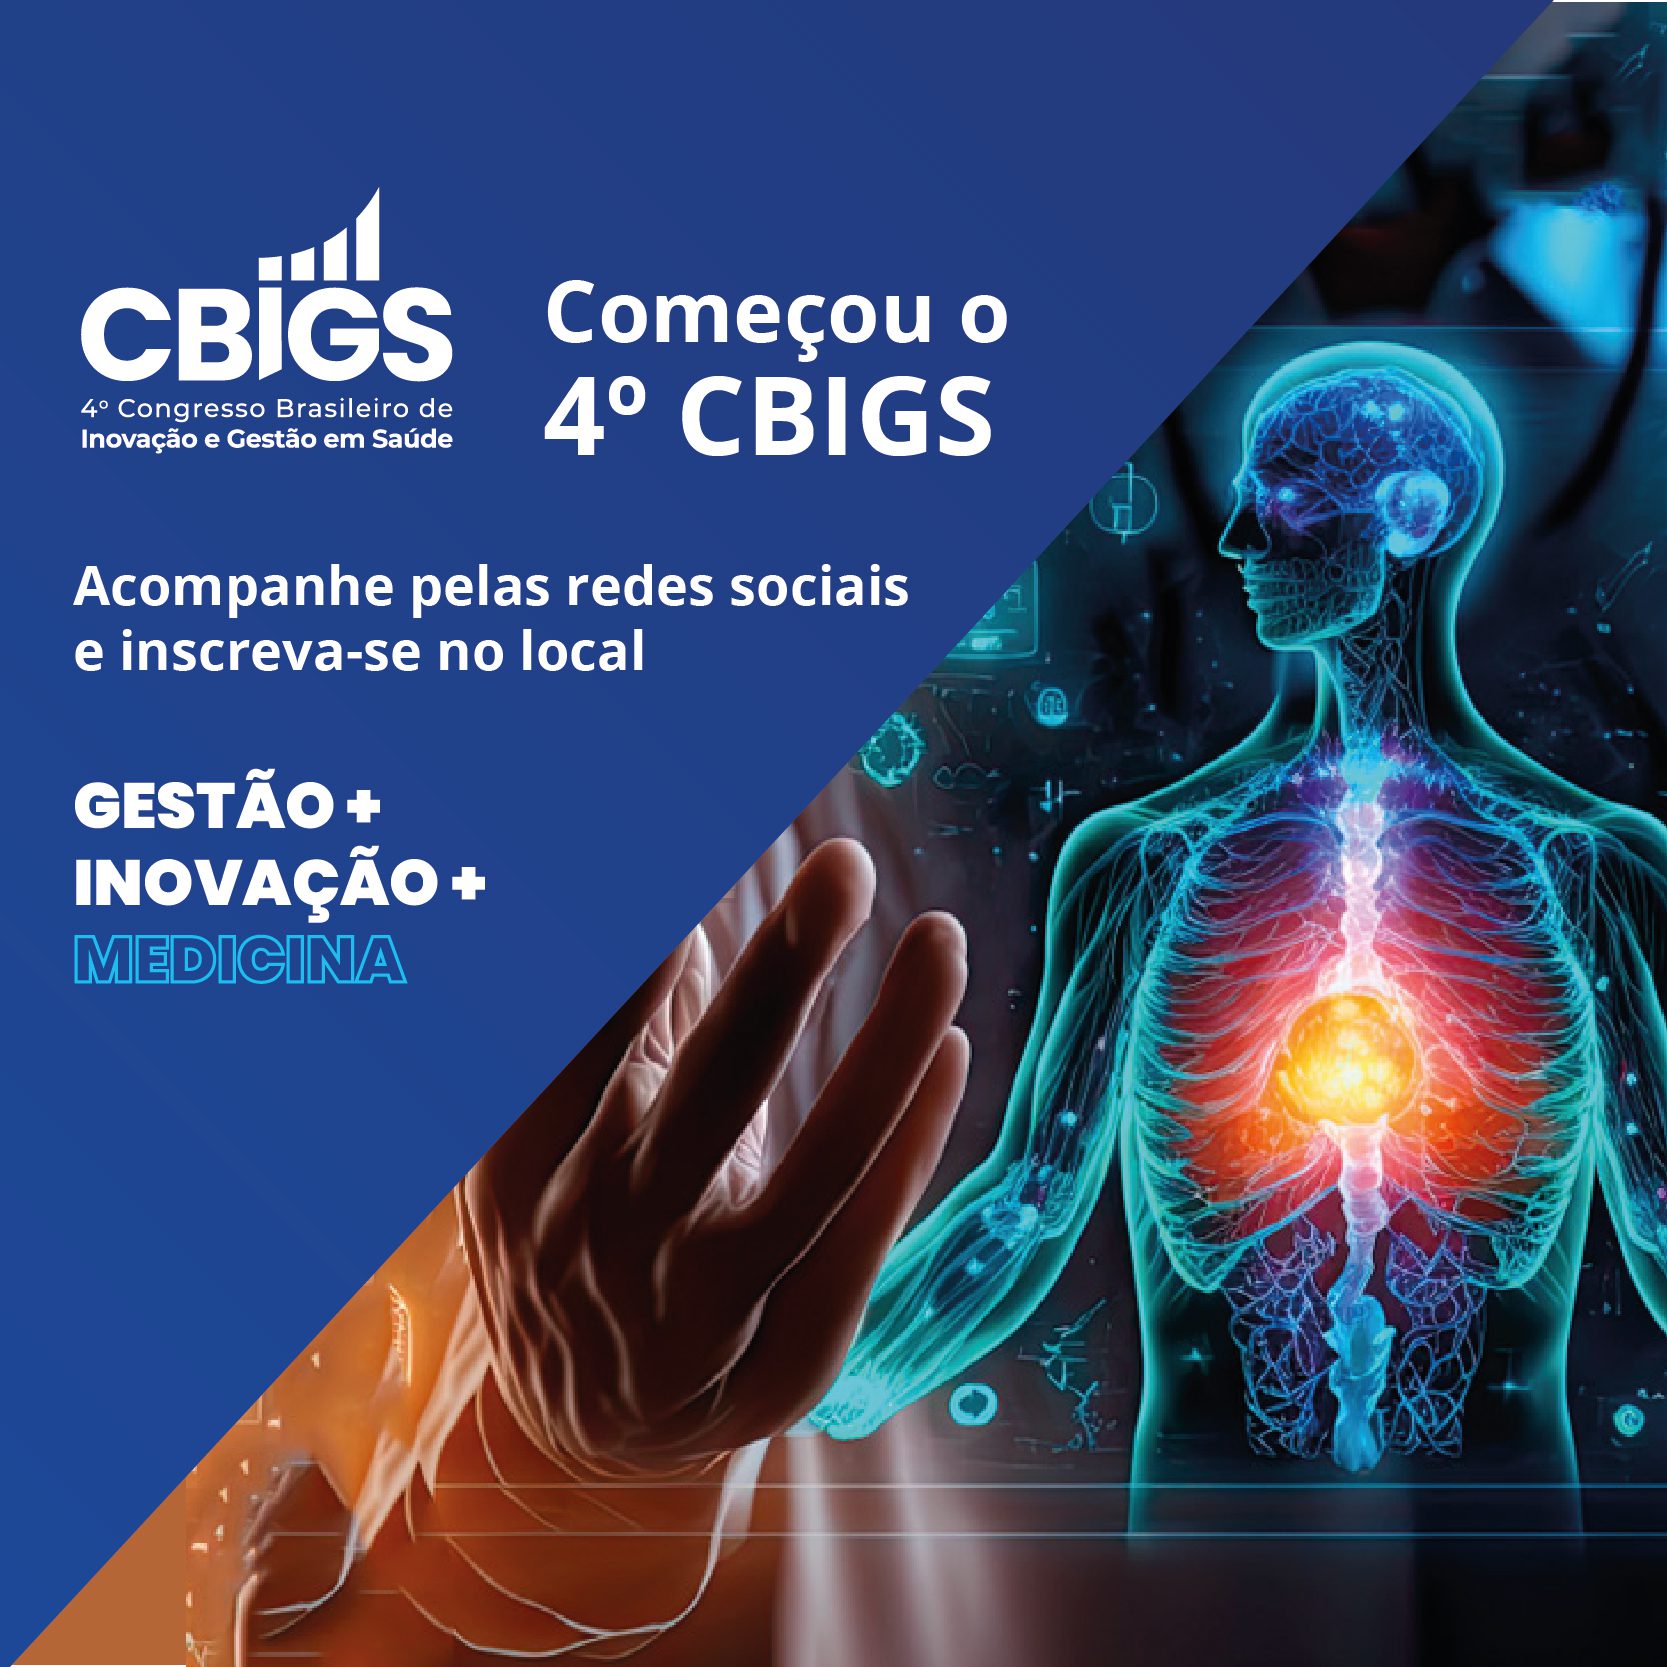 4º Congresso Brasileiro de Inovação e Gestão em Saúde começa com programação inovadora em São Paulo